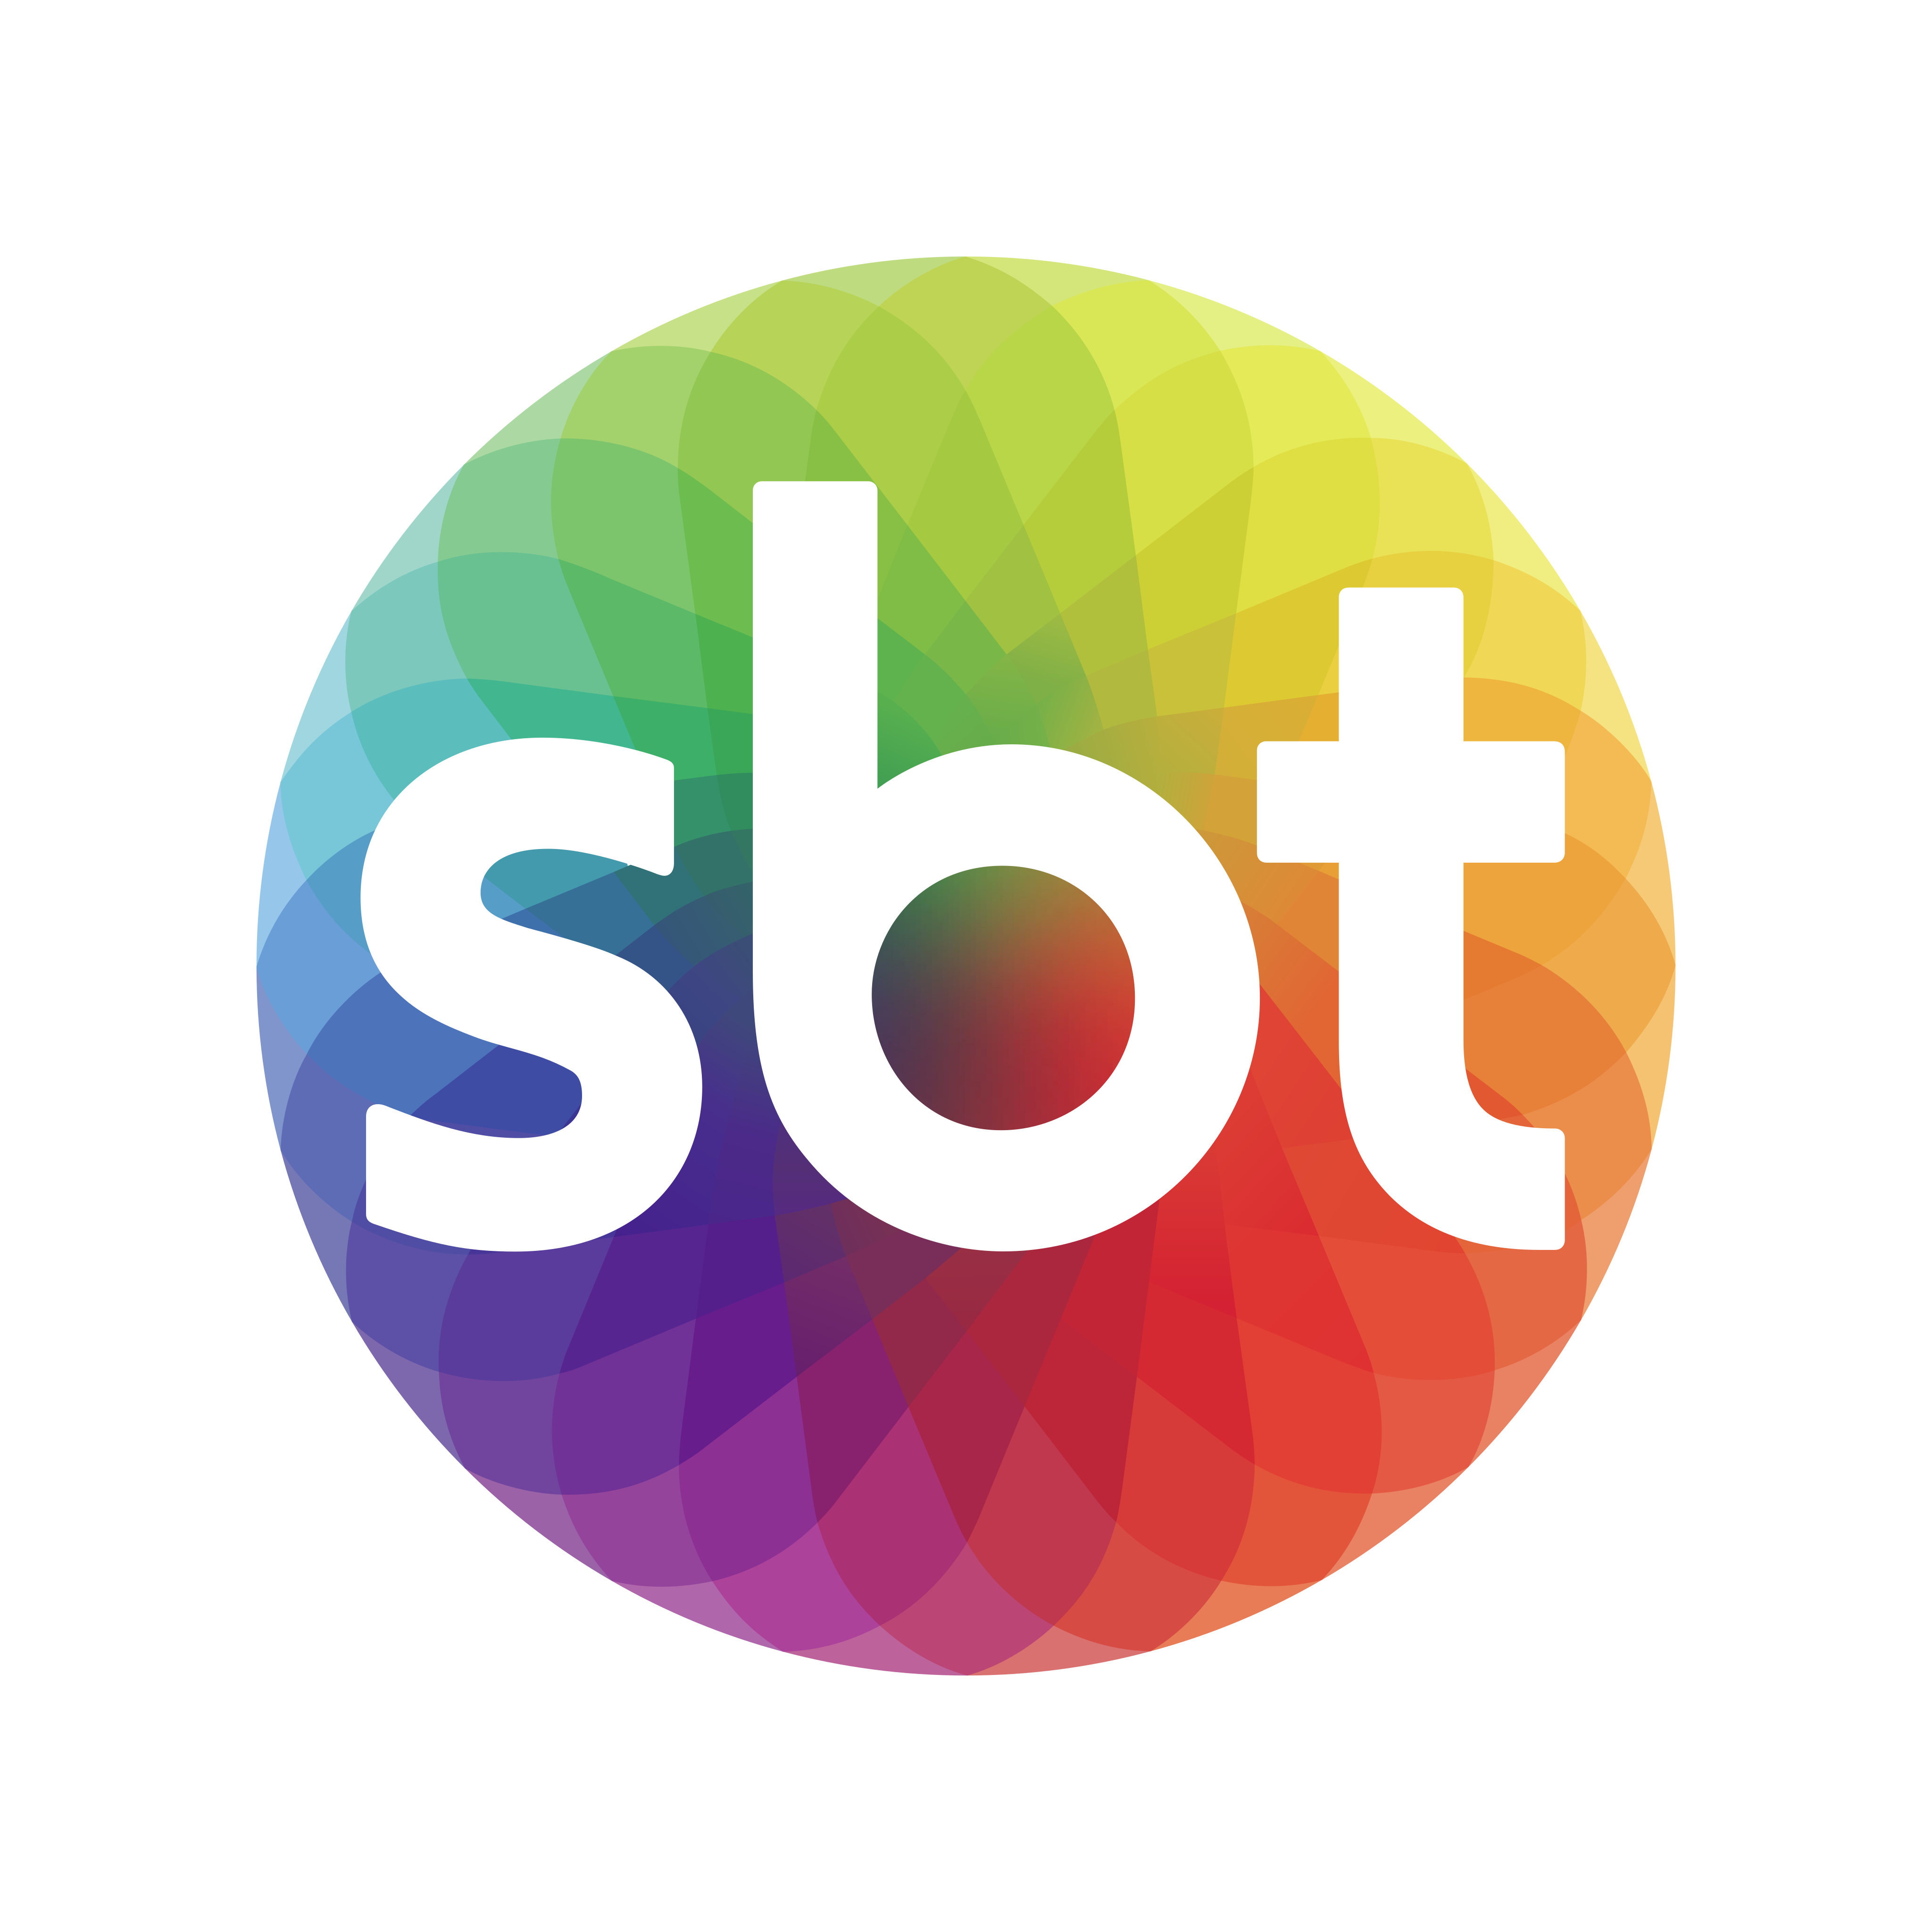 sbt-logo-0